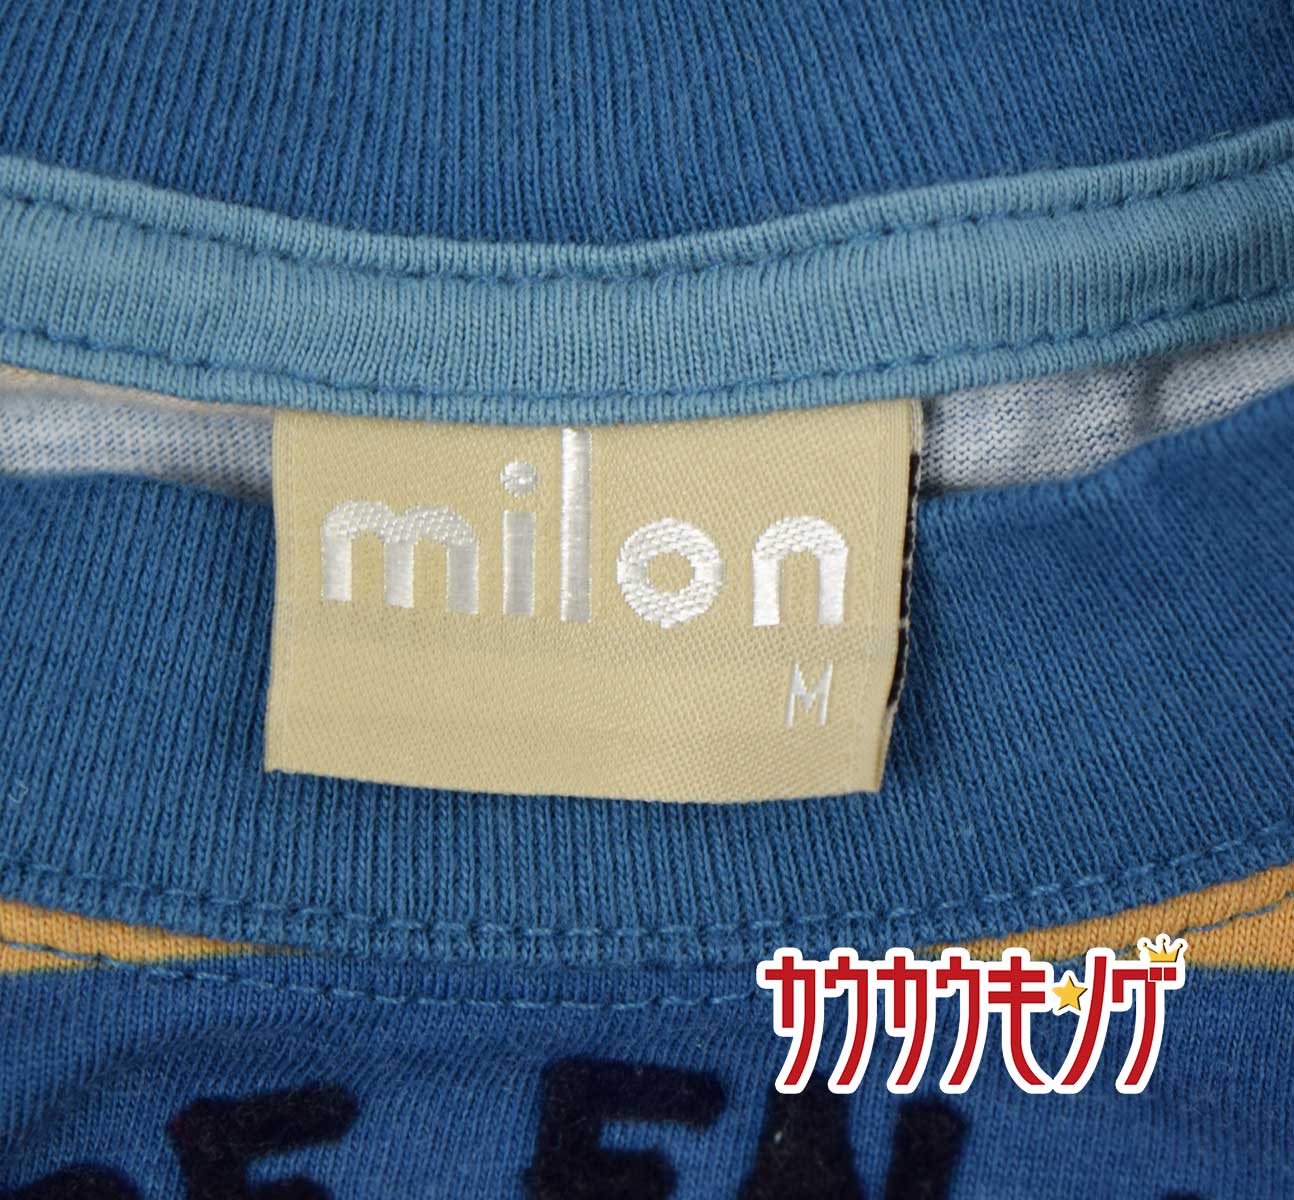 【中古】milon トップス Mサイズ ベビー服